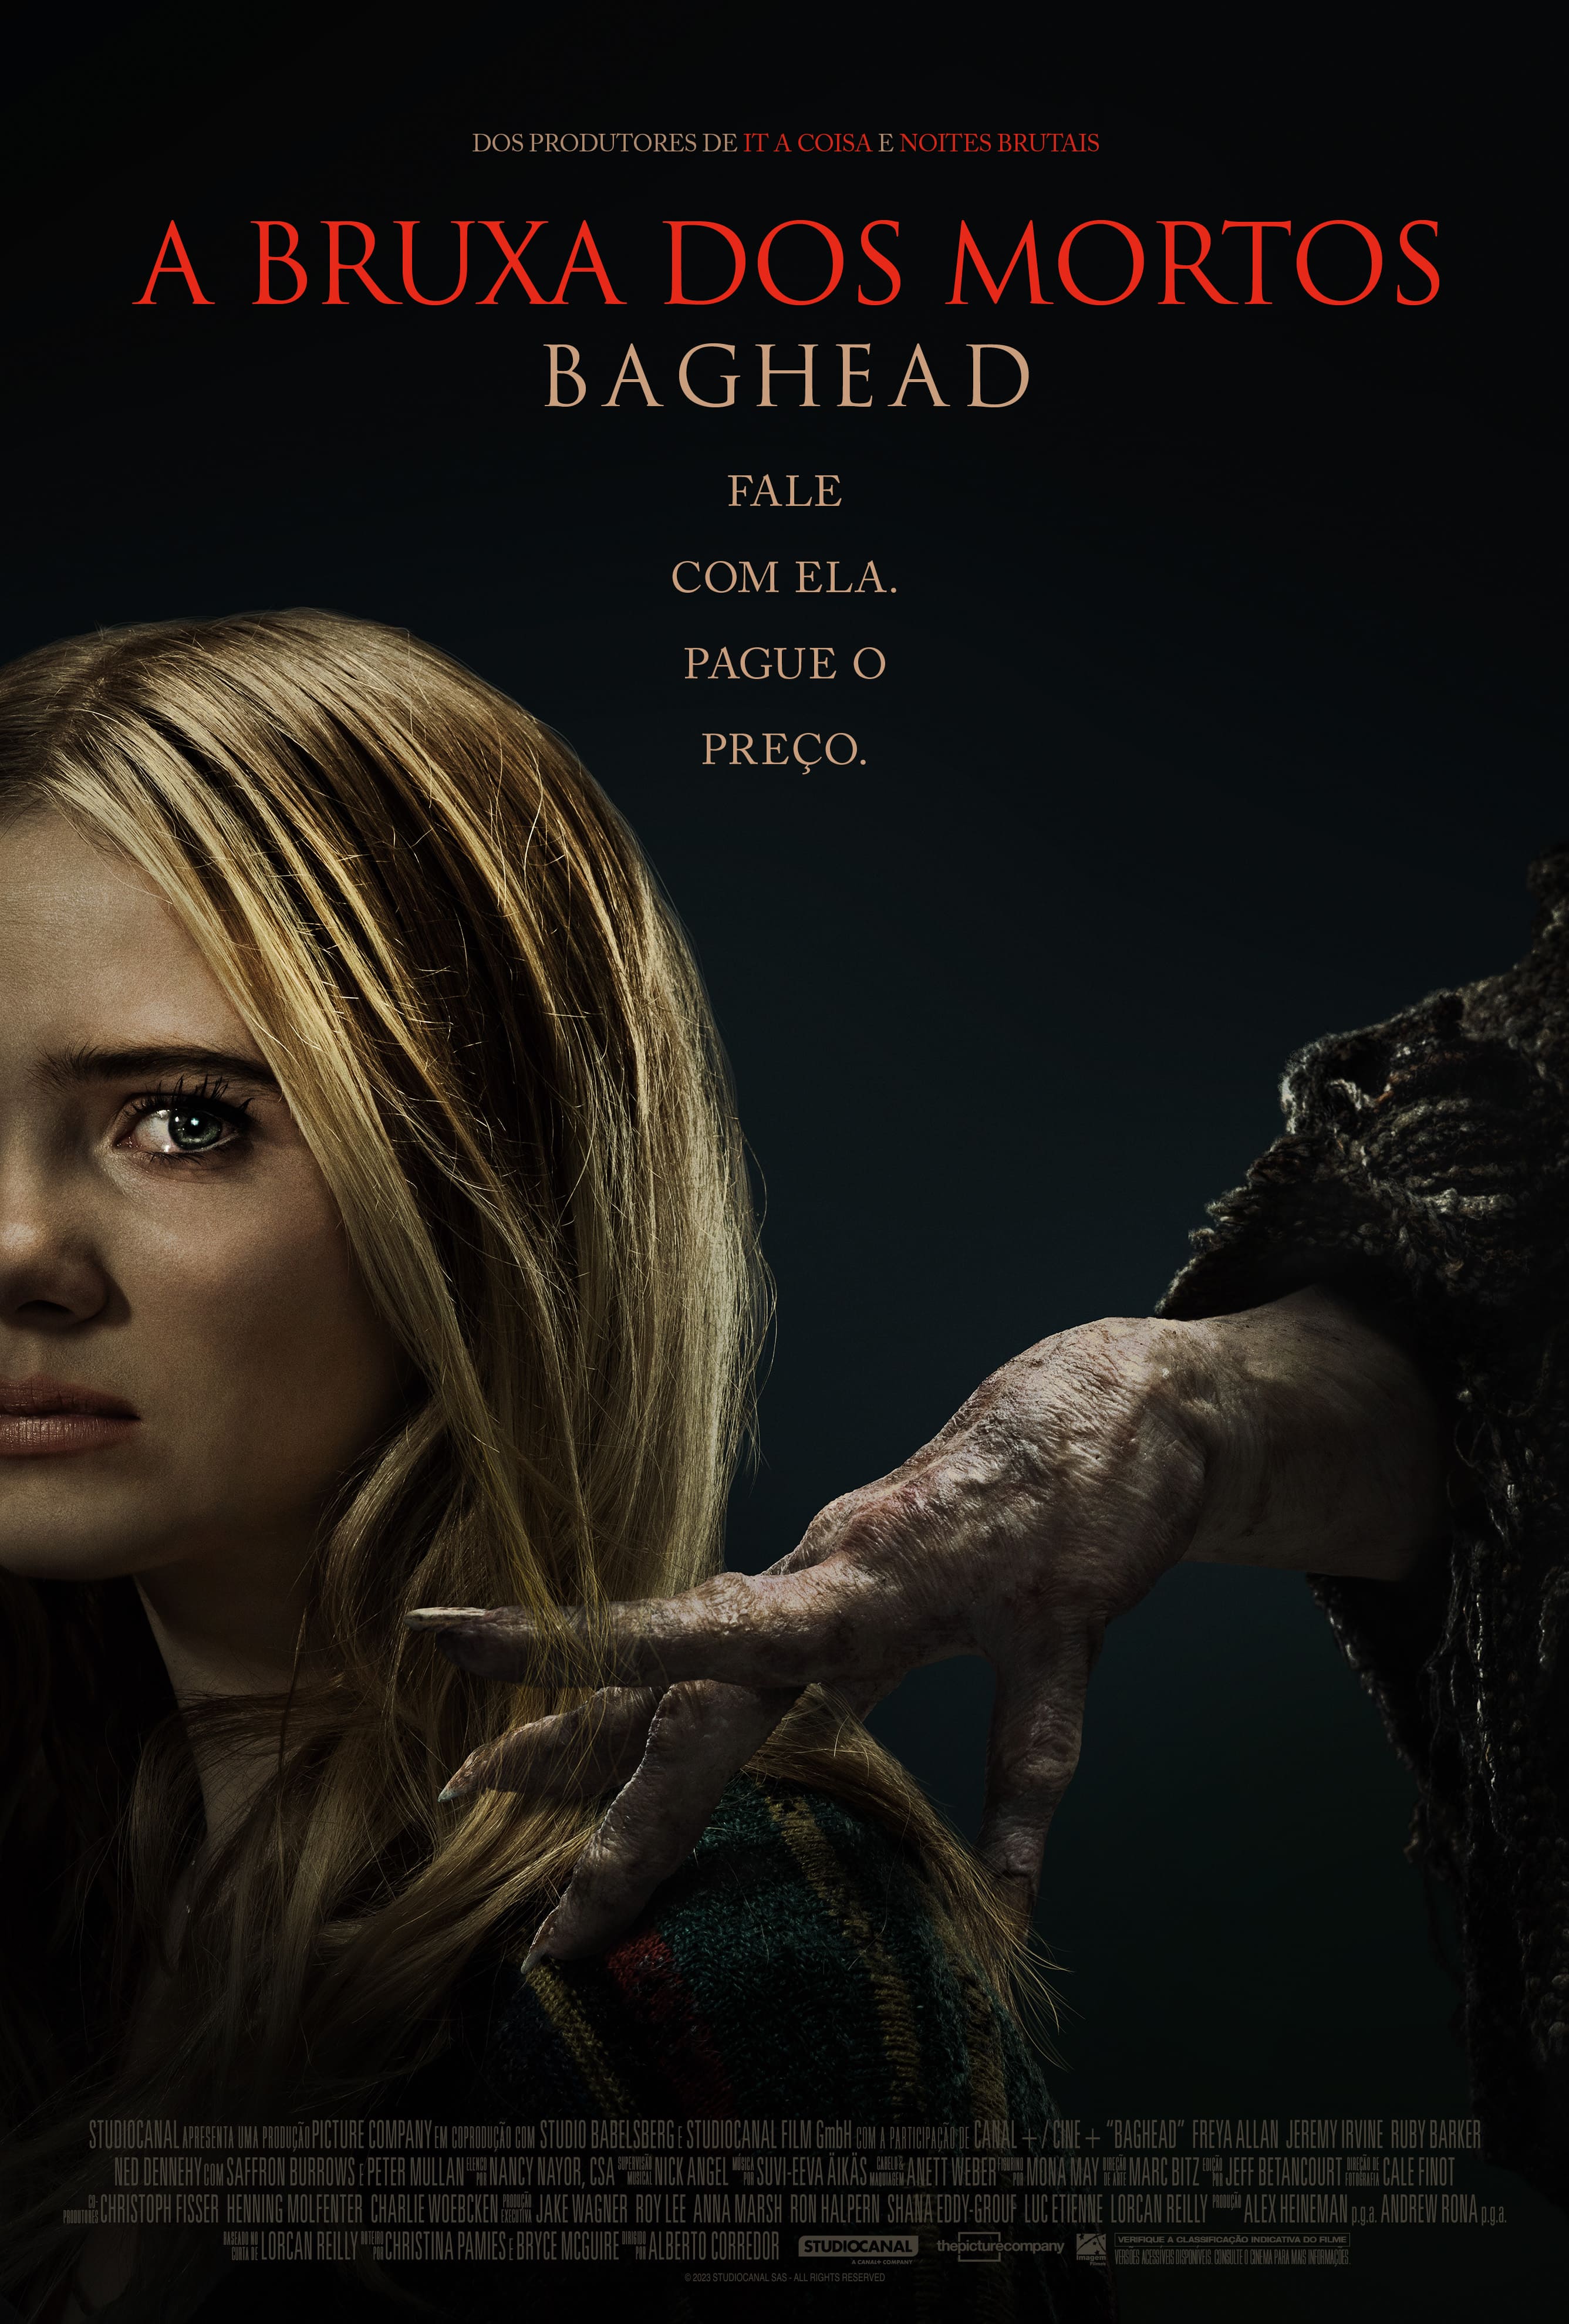 Baghead: A Bruxa dos Mortos